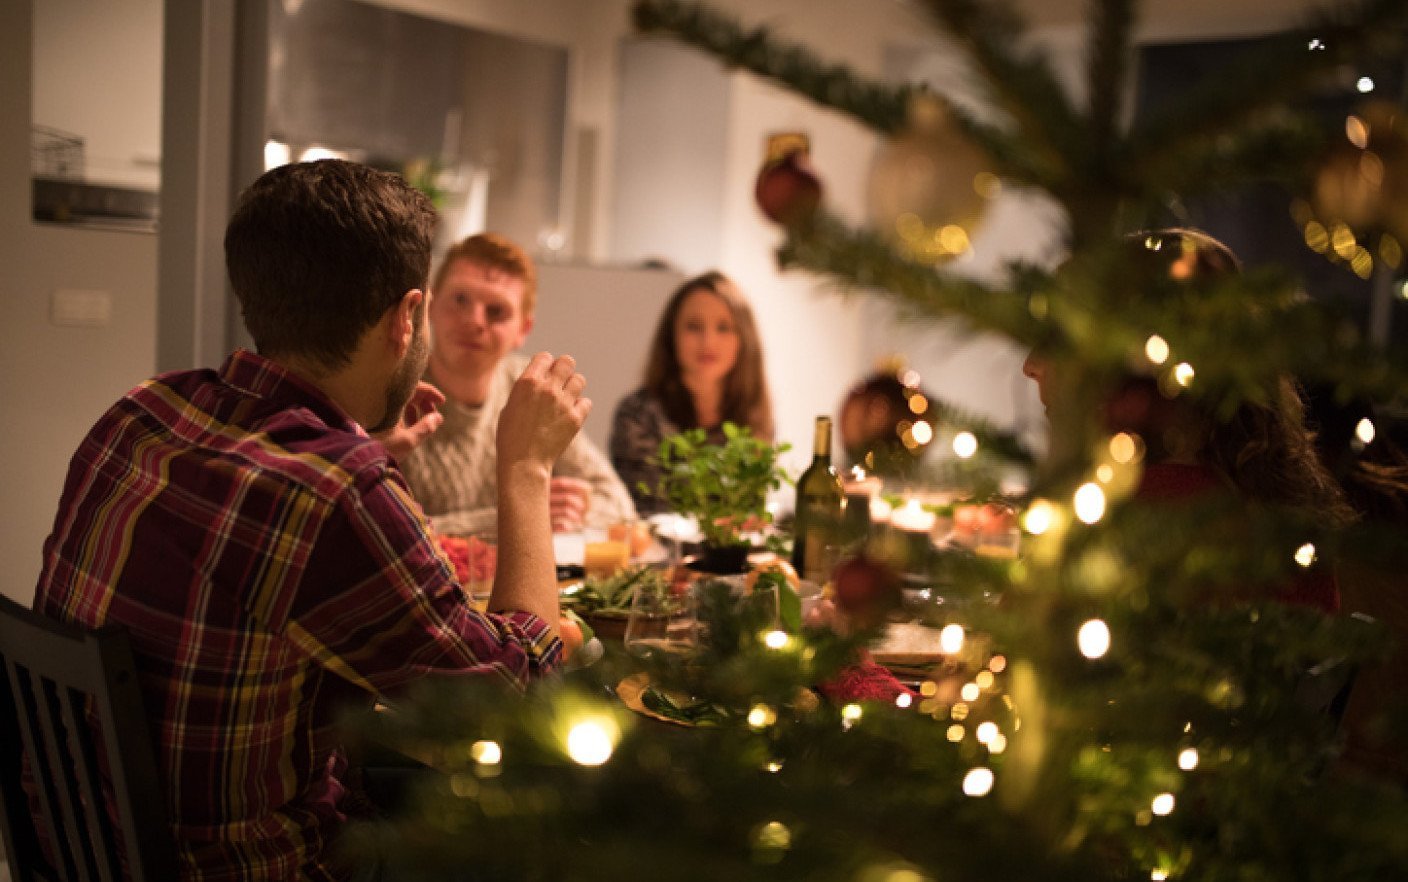  Să ne bucurăm de masa de Crăciun! Ce și cât ar trebui să mâncăm?